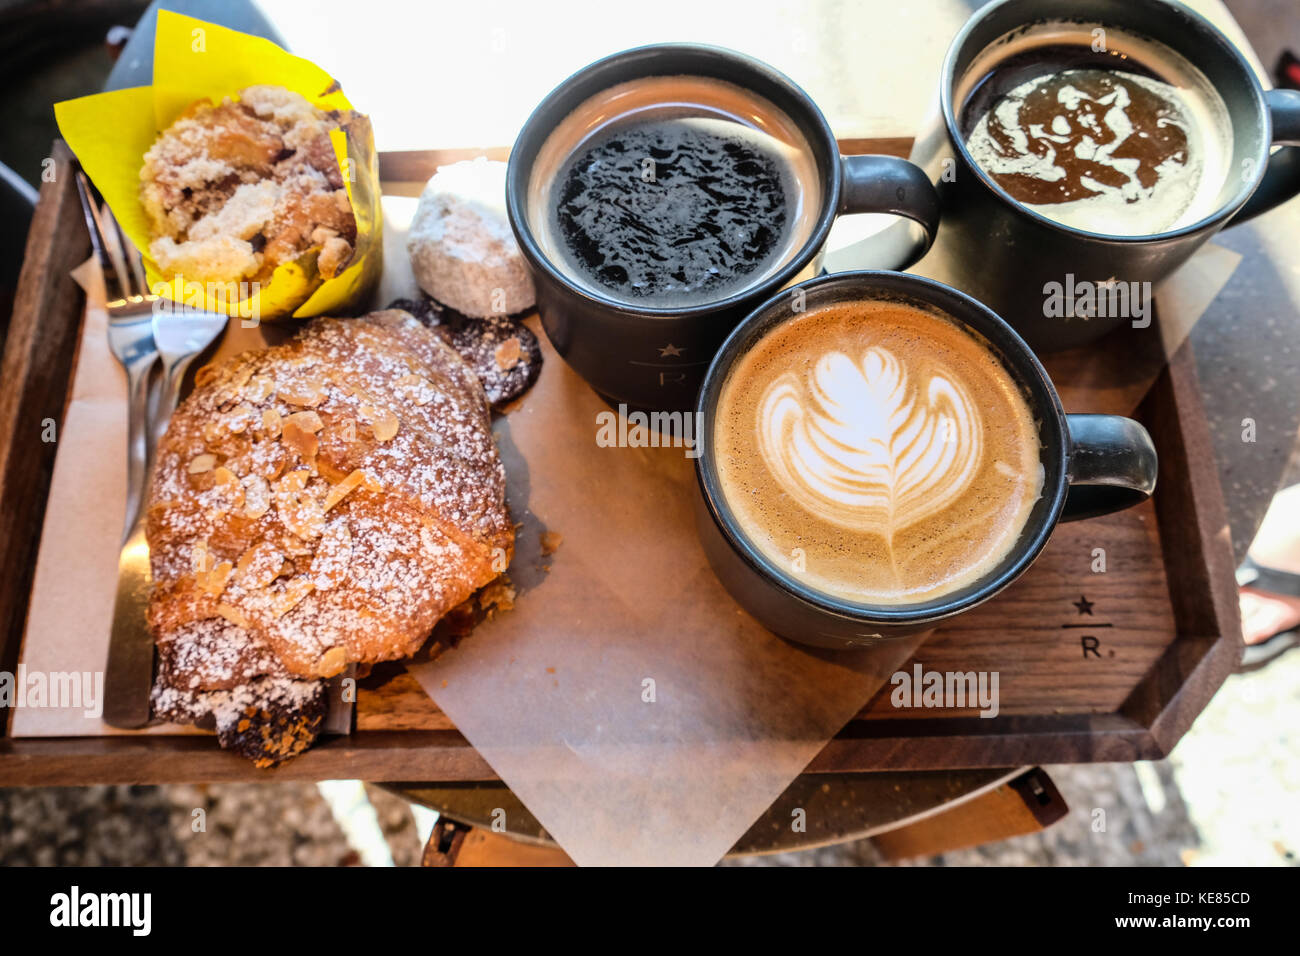 Trois tasses de café et des morceaux de pâtisseries dans un bac Photo Stock  - Alamy